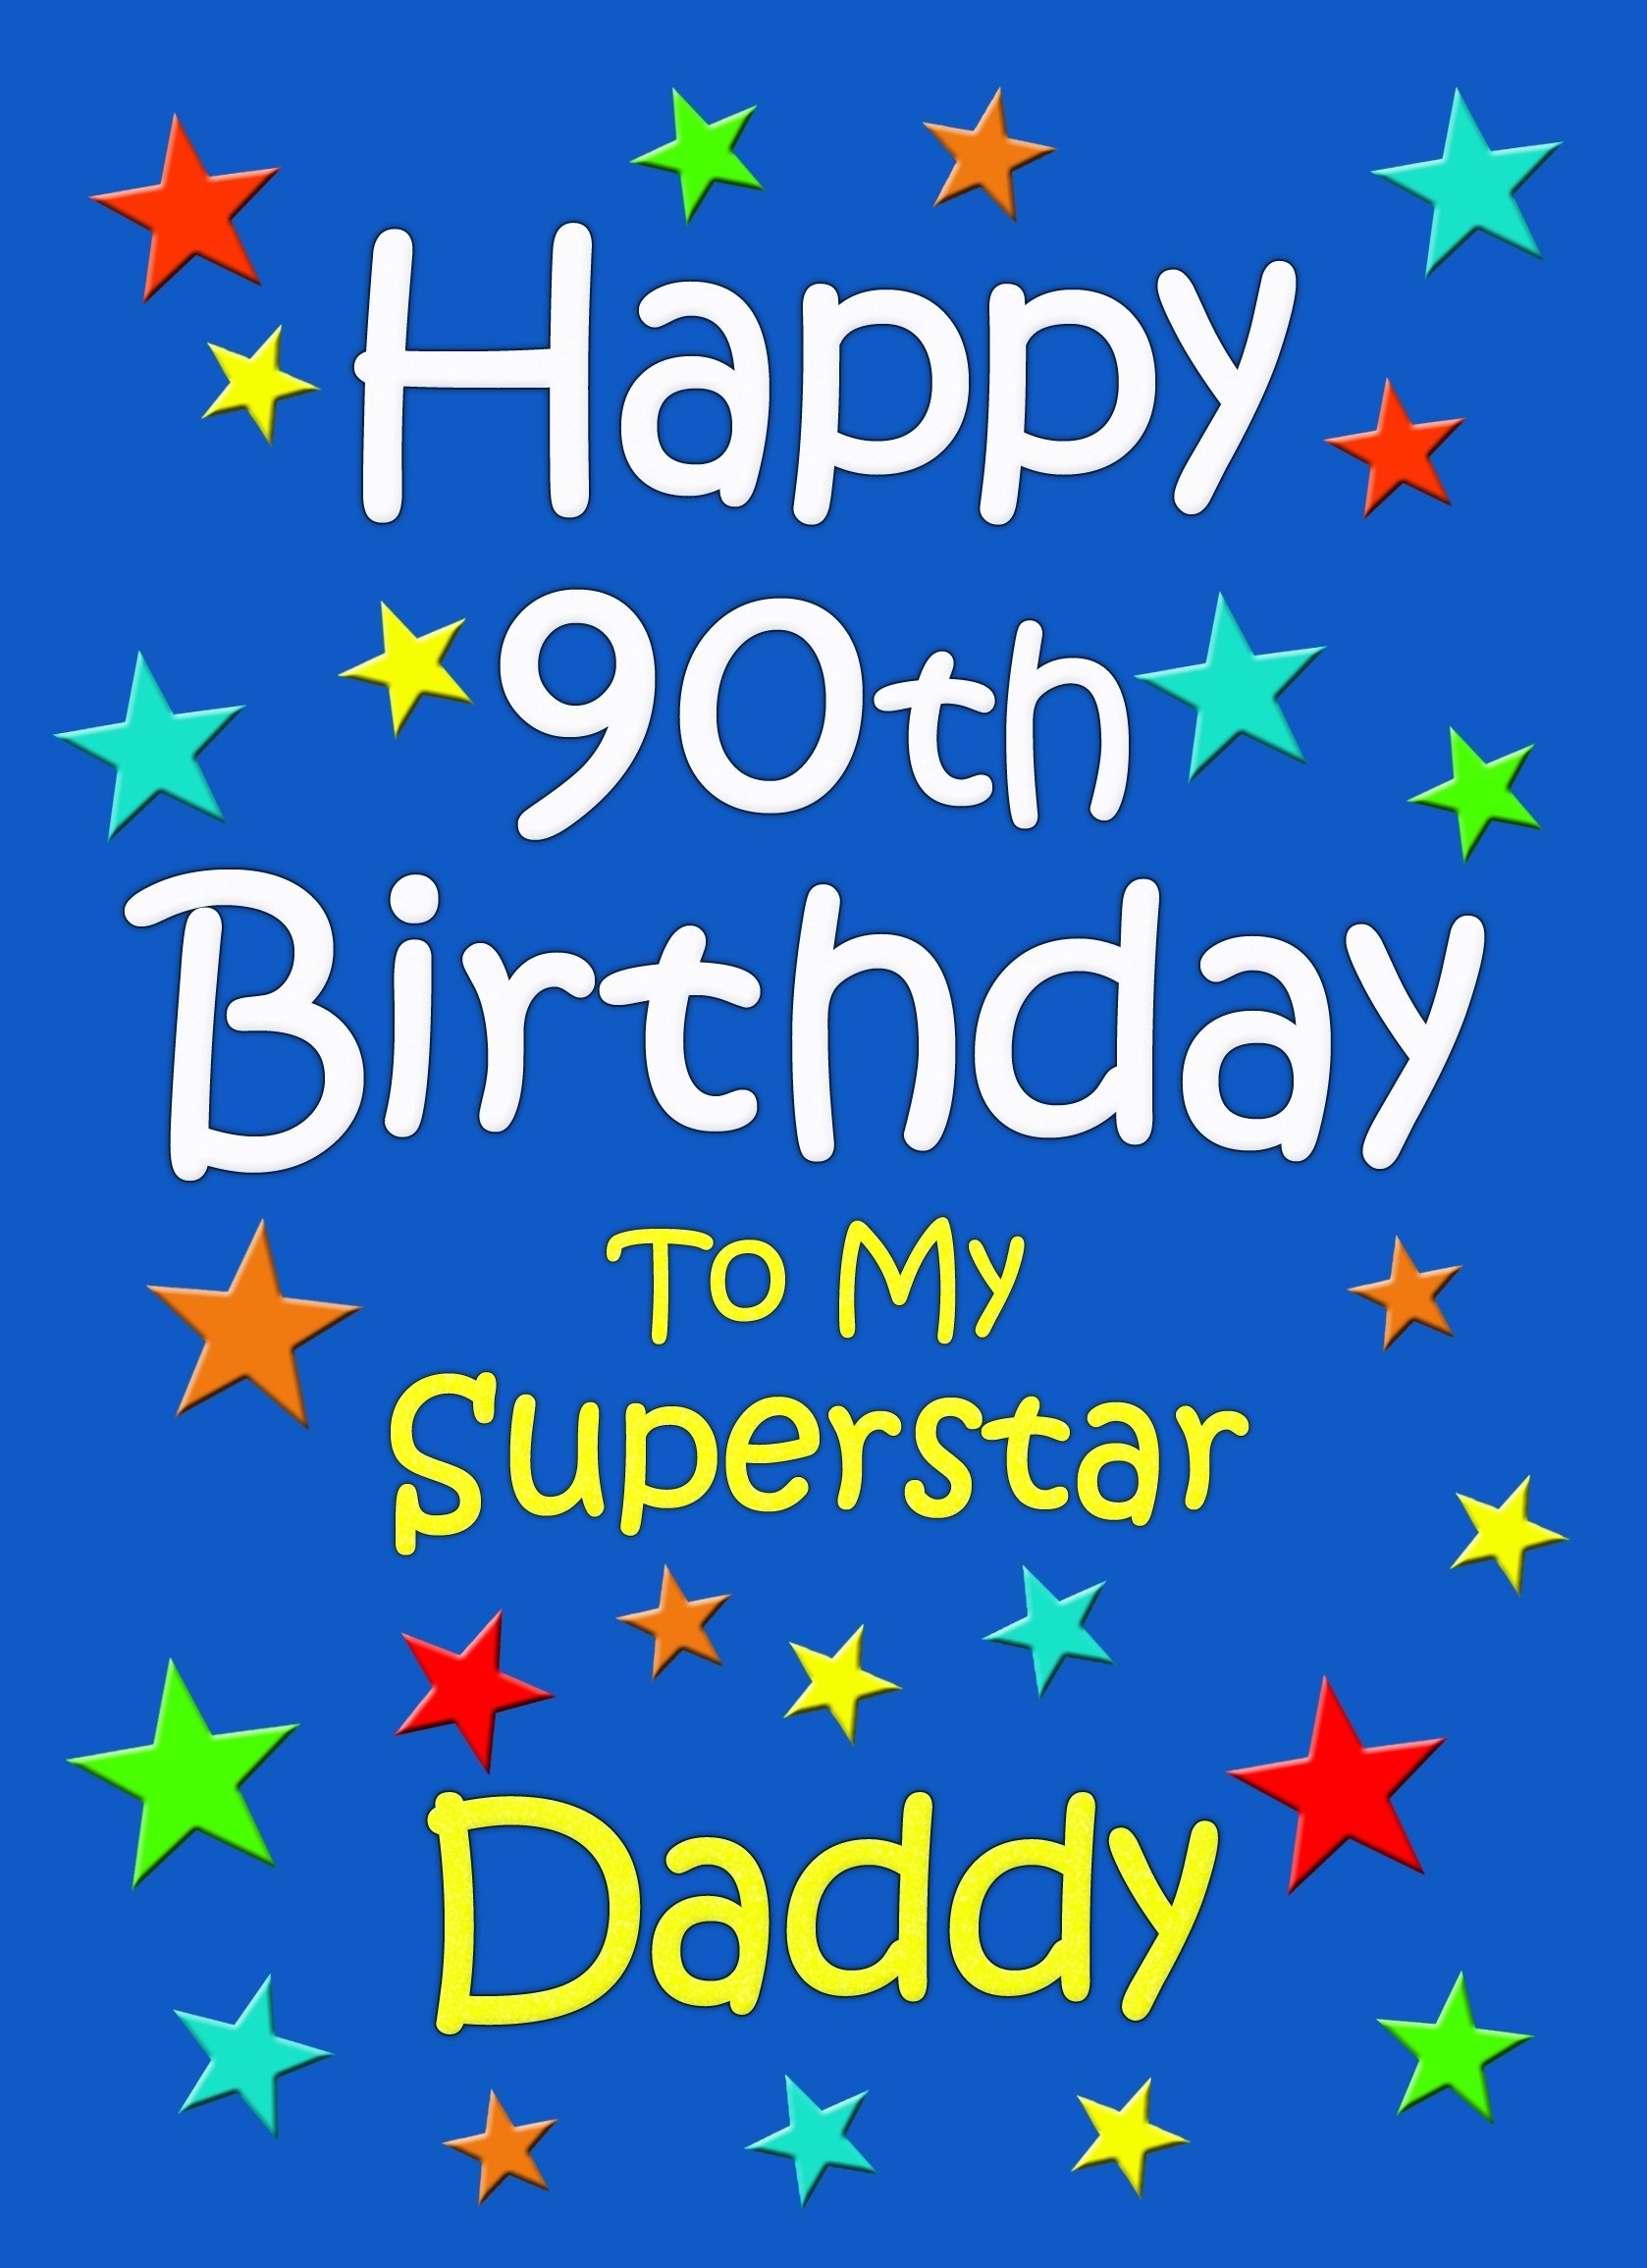 Daddy 90th Birthday Card (Blue)